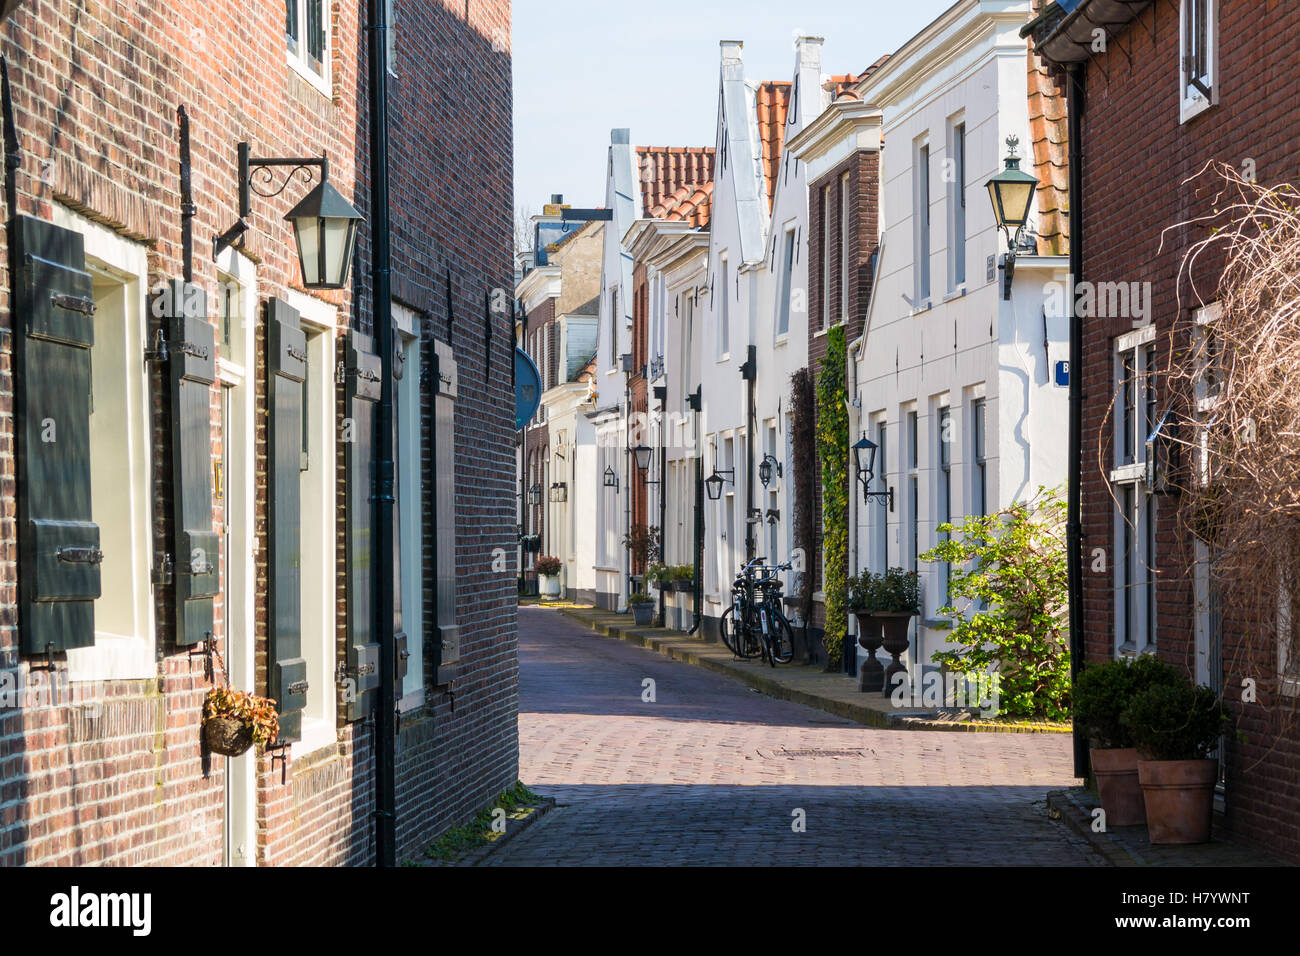 Streetscene de calles estrechas en el casco antiguo de la ciudad de Naarden, Holanda Septentrional, Holanda Foto de stock